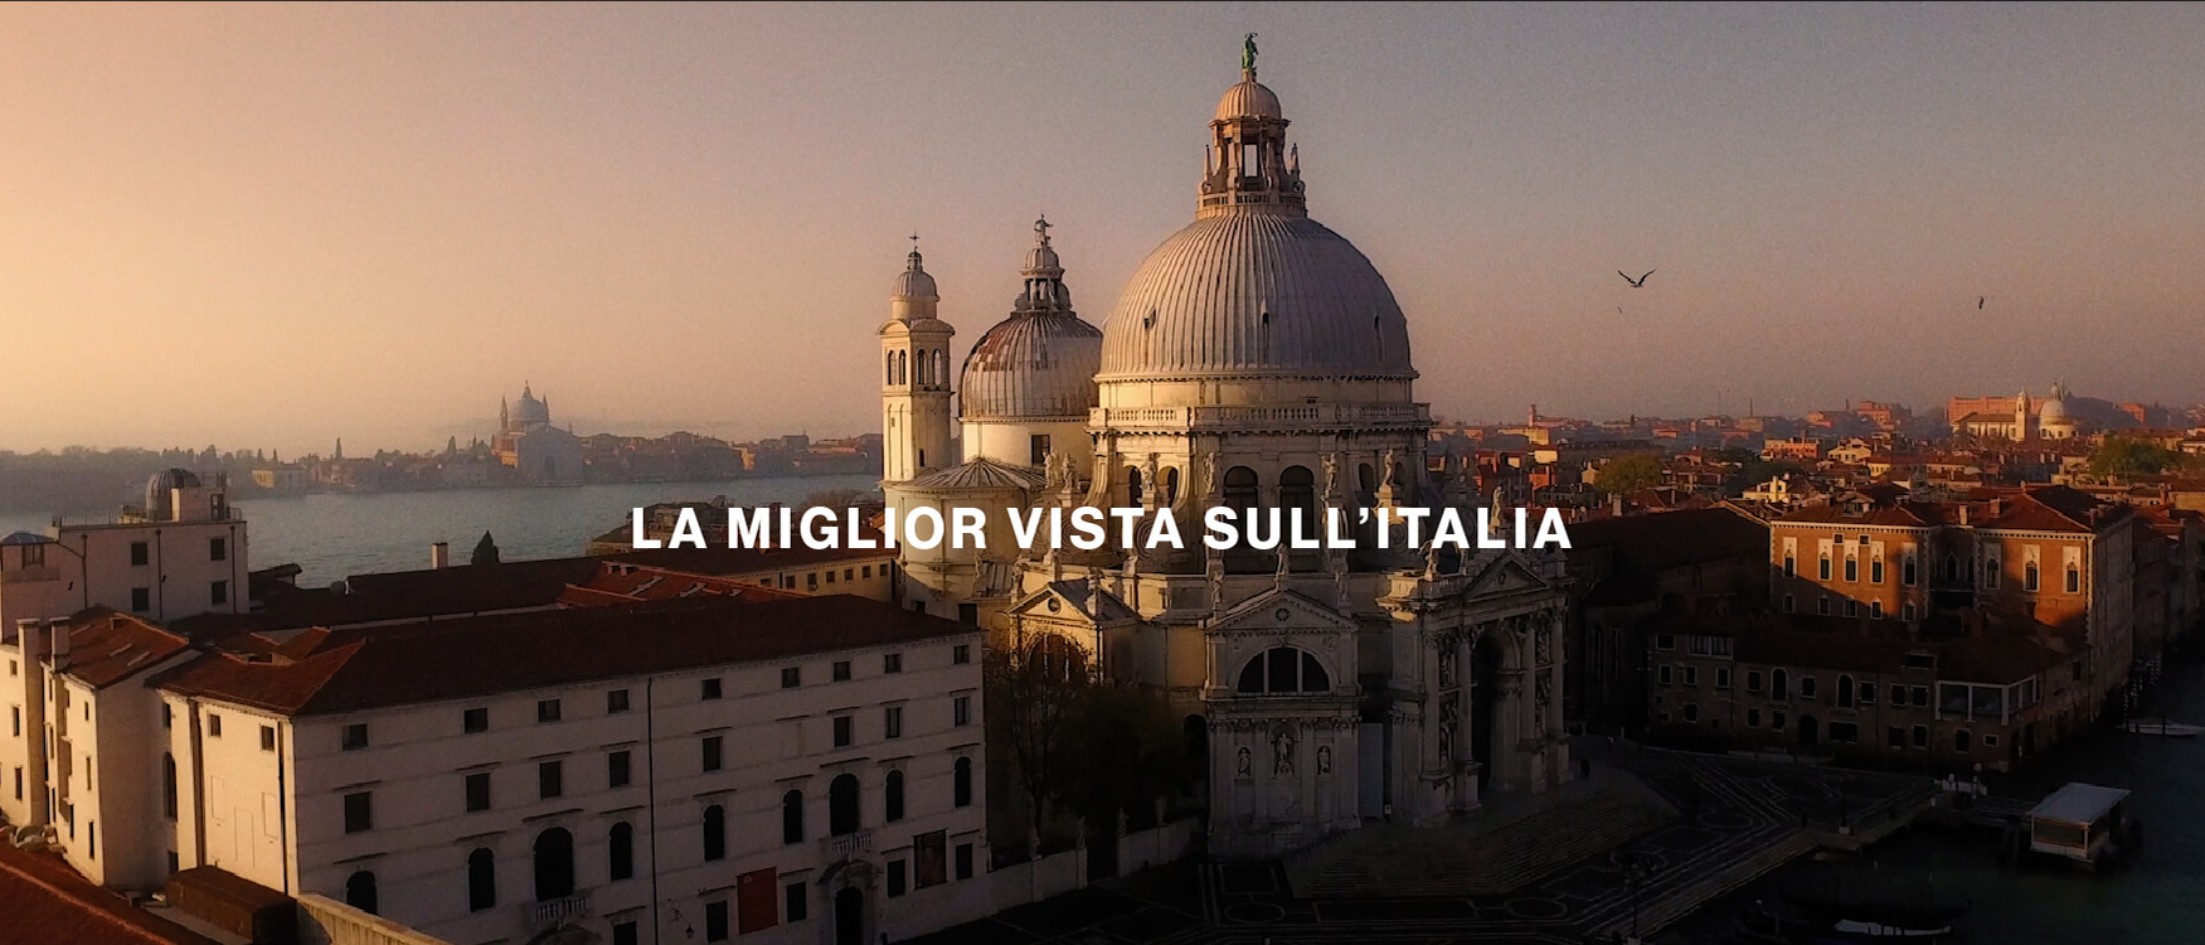 The best view of Italy: Finestra Italiana